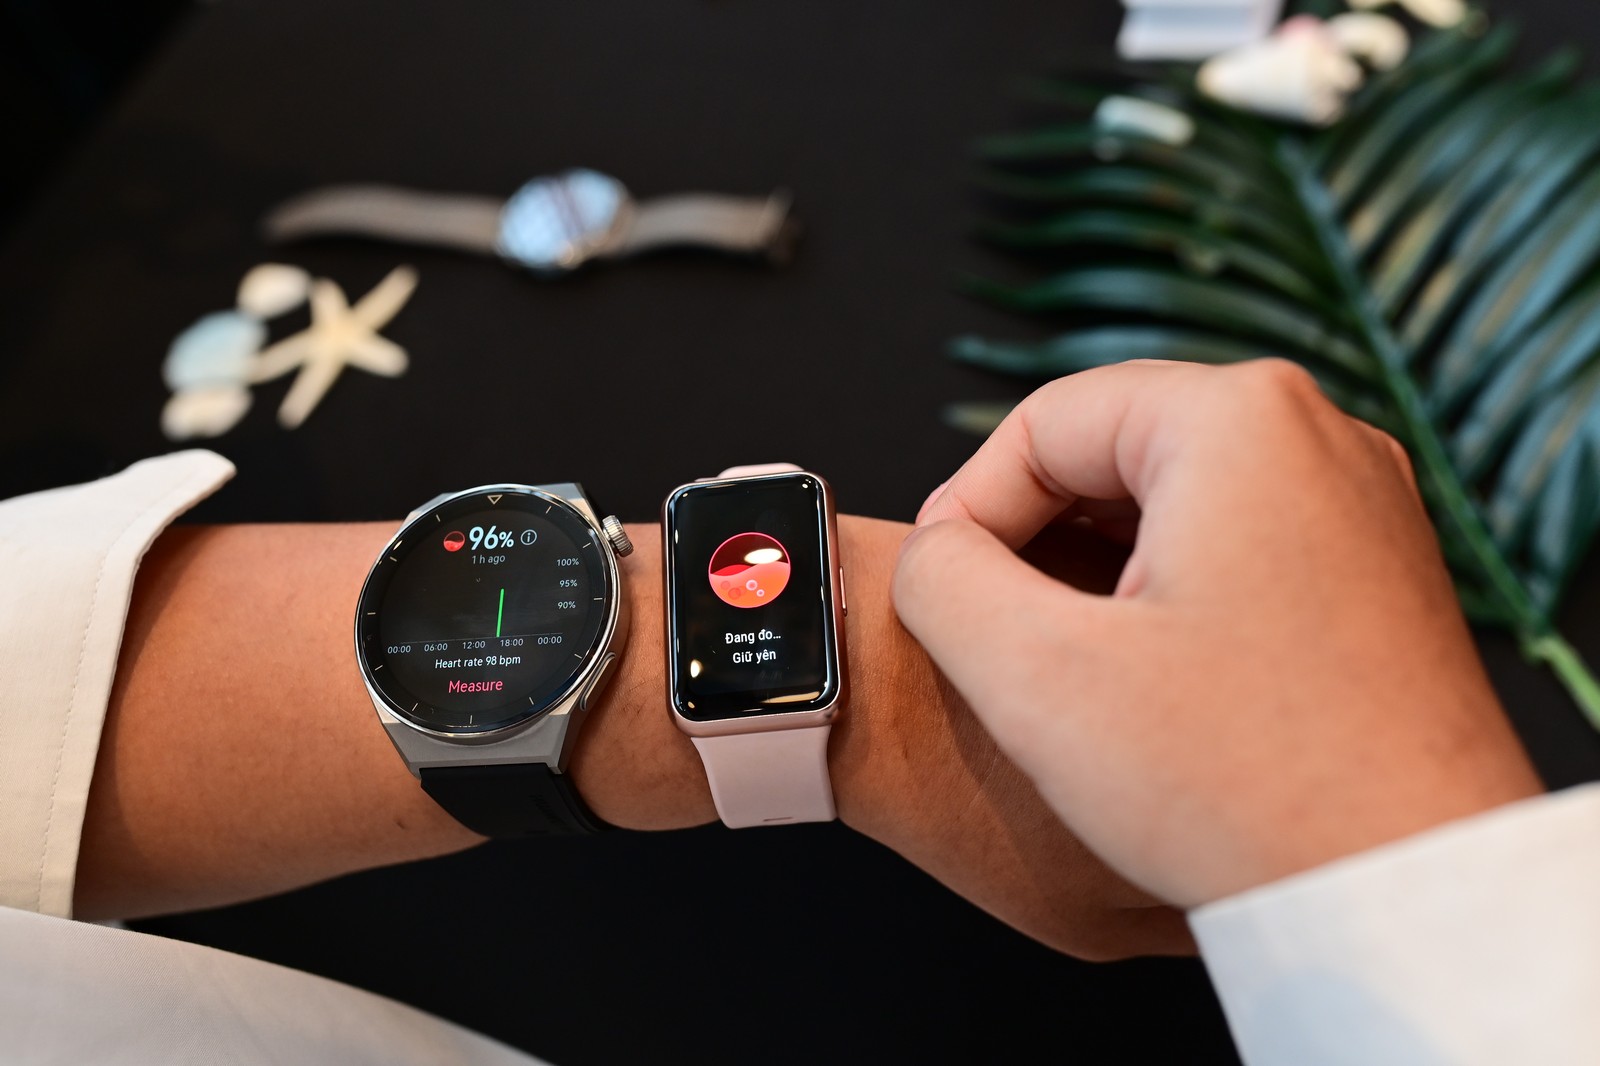 Huawei giới thiệu đến người dùng Việt Nam ba mẫu đồng hồ thông minh mới